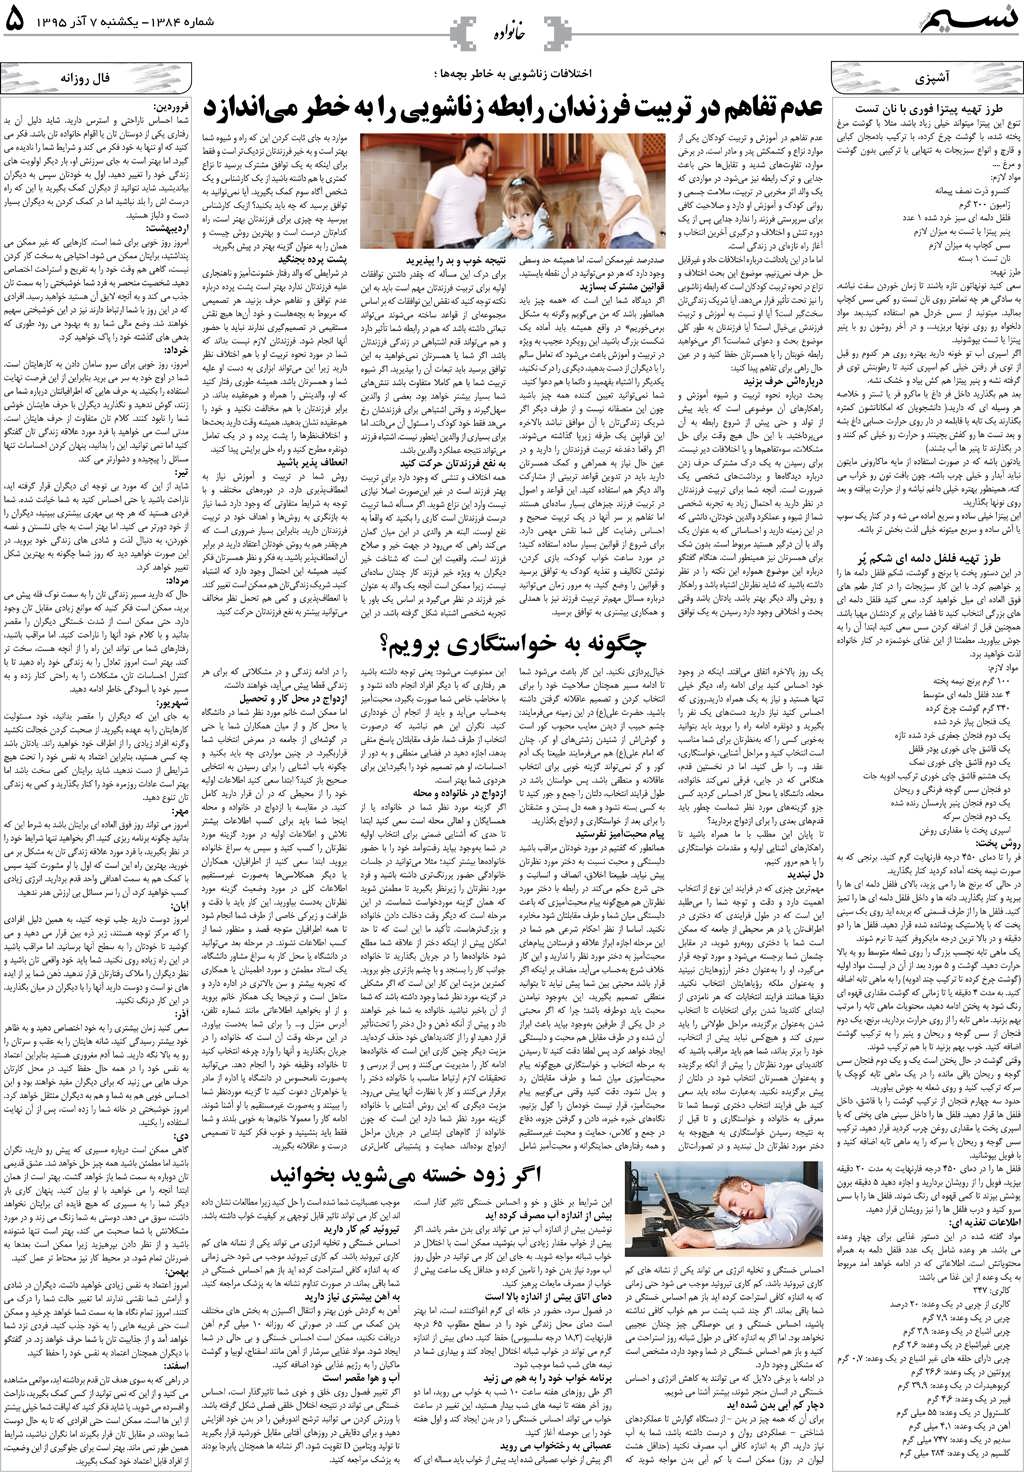 صفحه خانواده روزنامه نسیم شماره 1384